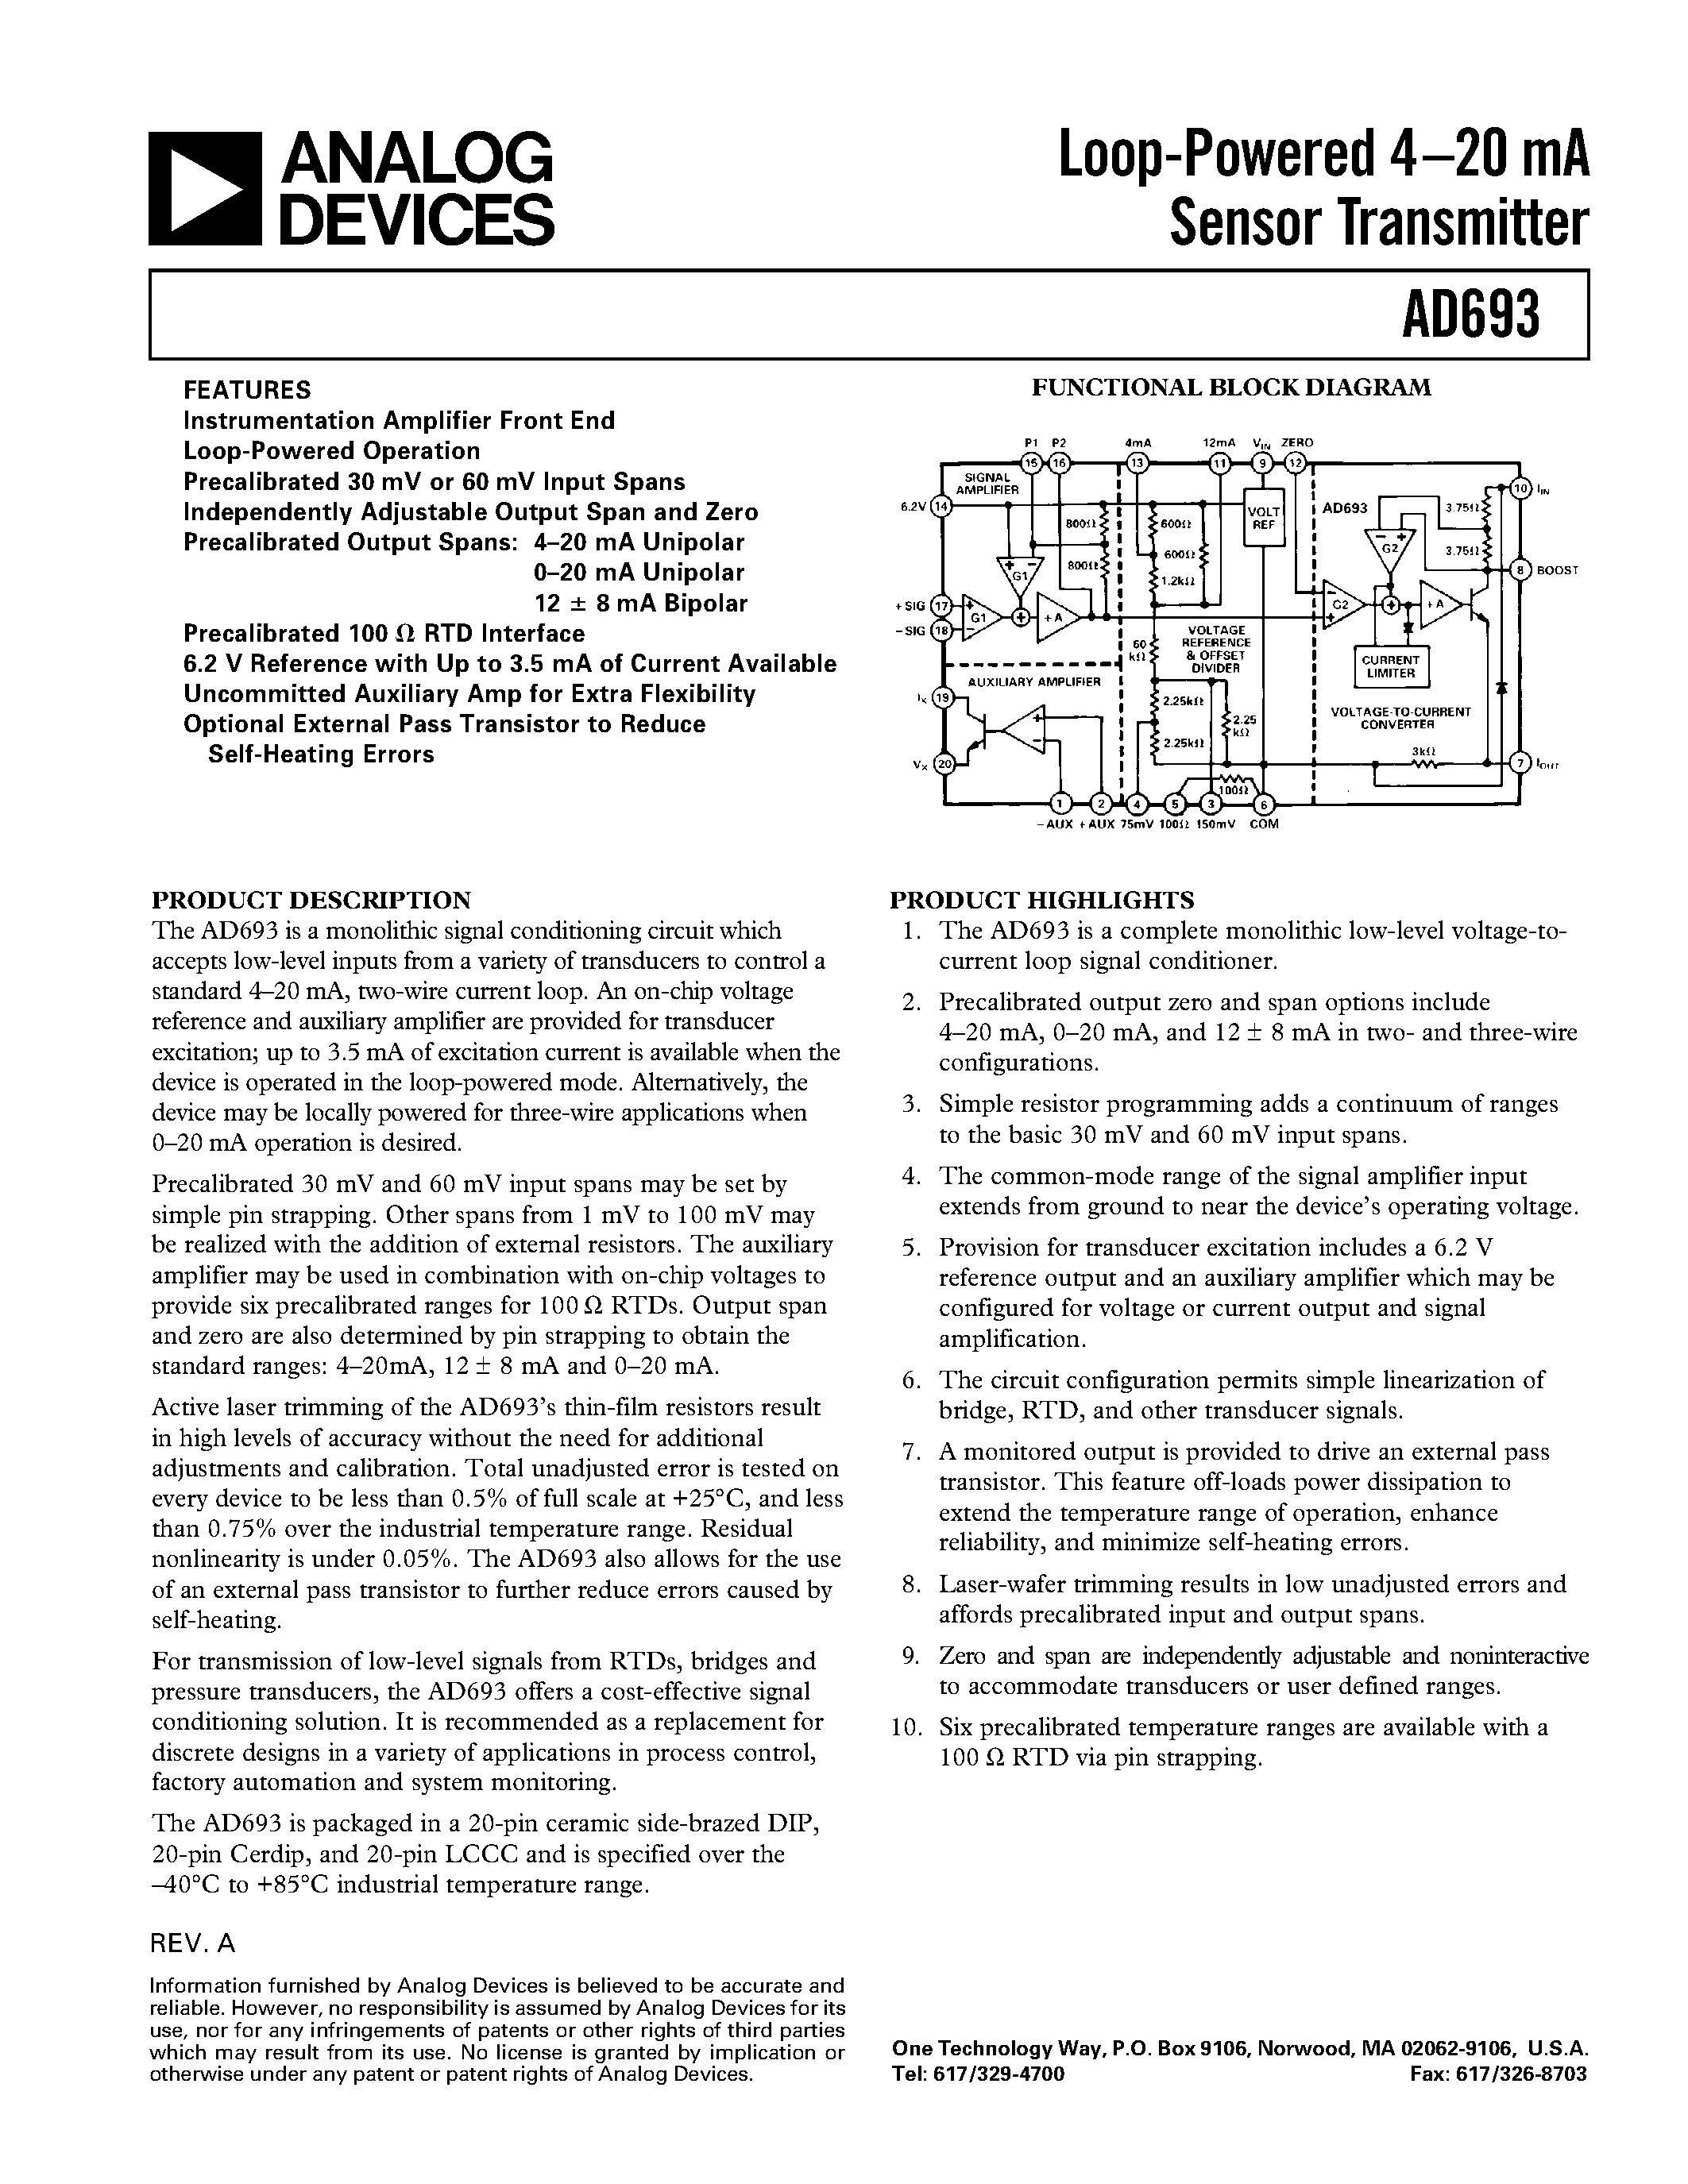 Даташит AD693 - Loop-Powered 4.20 mA Sensor Transmitter страница 1